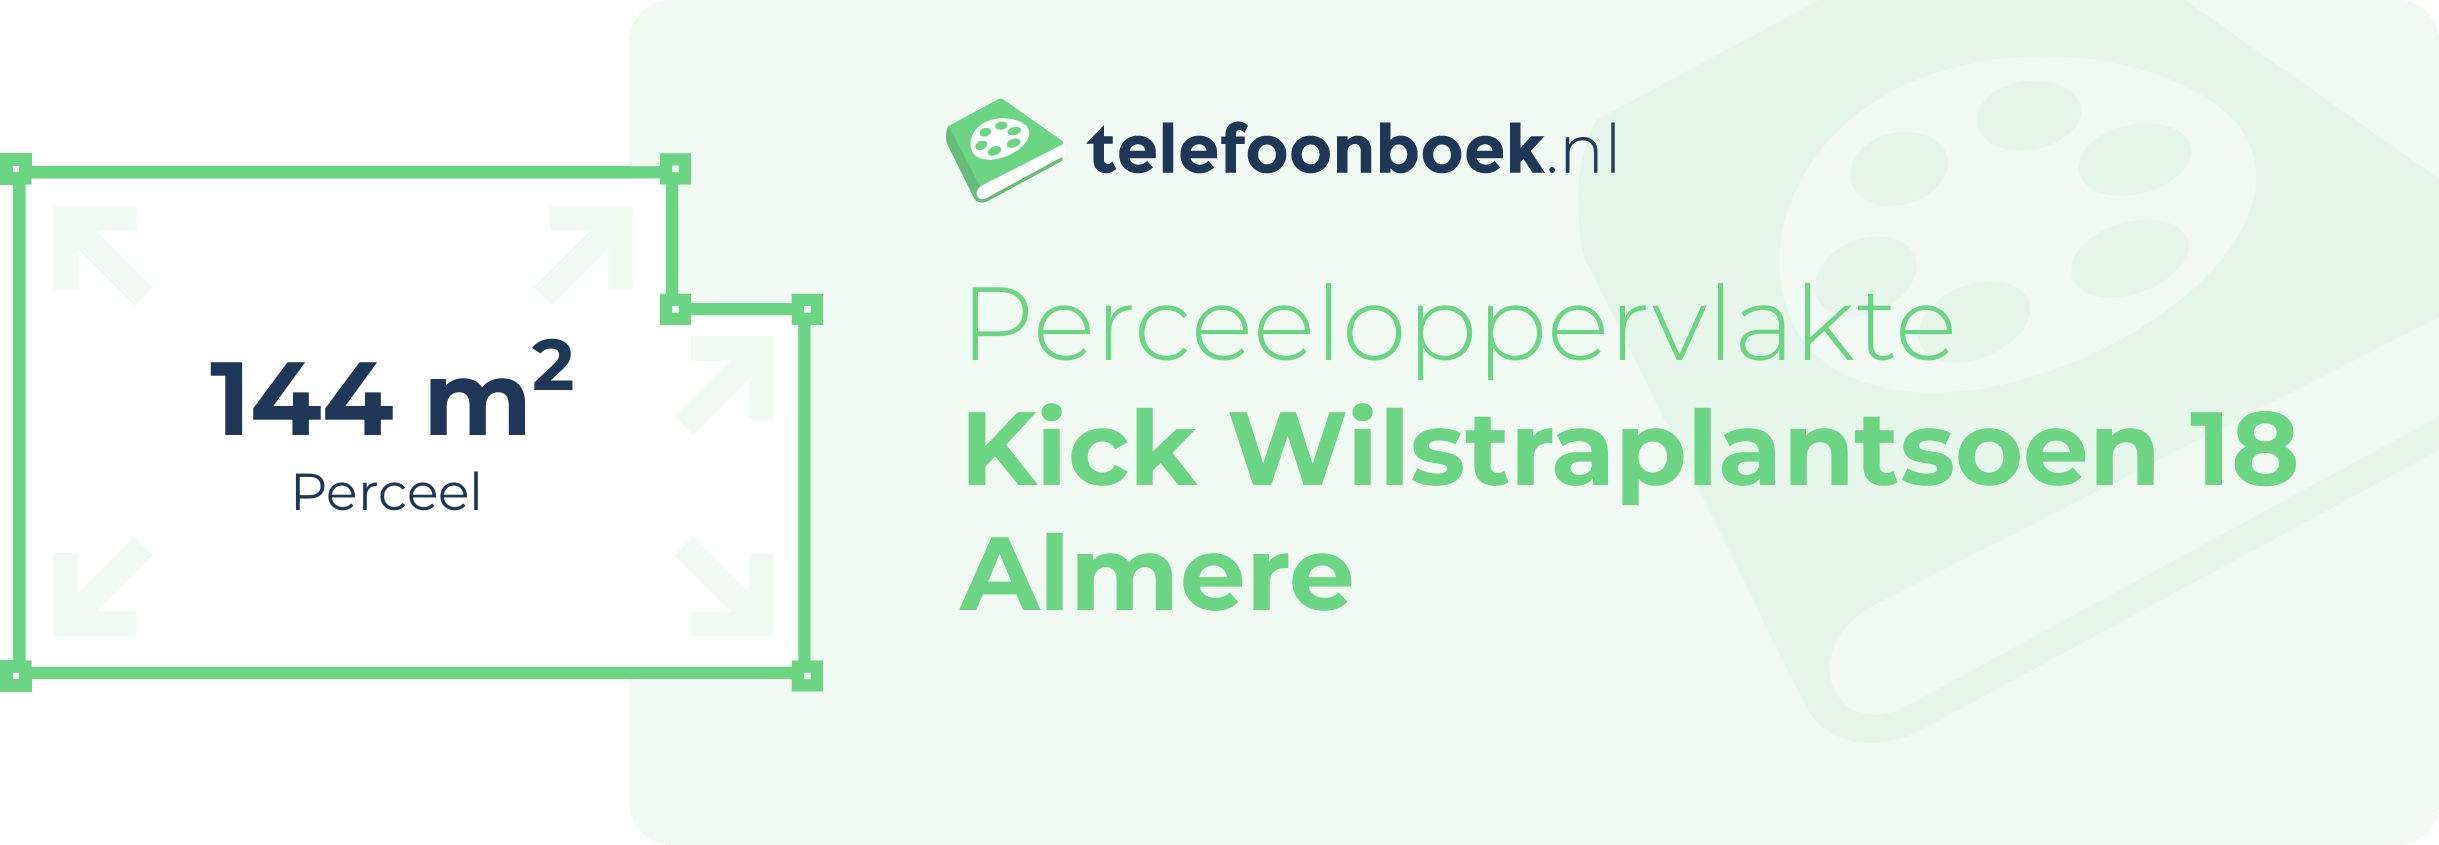 Perceeloppervlakte Kick Wilstraplantsoen 18 Almere